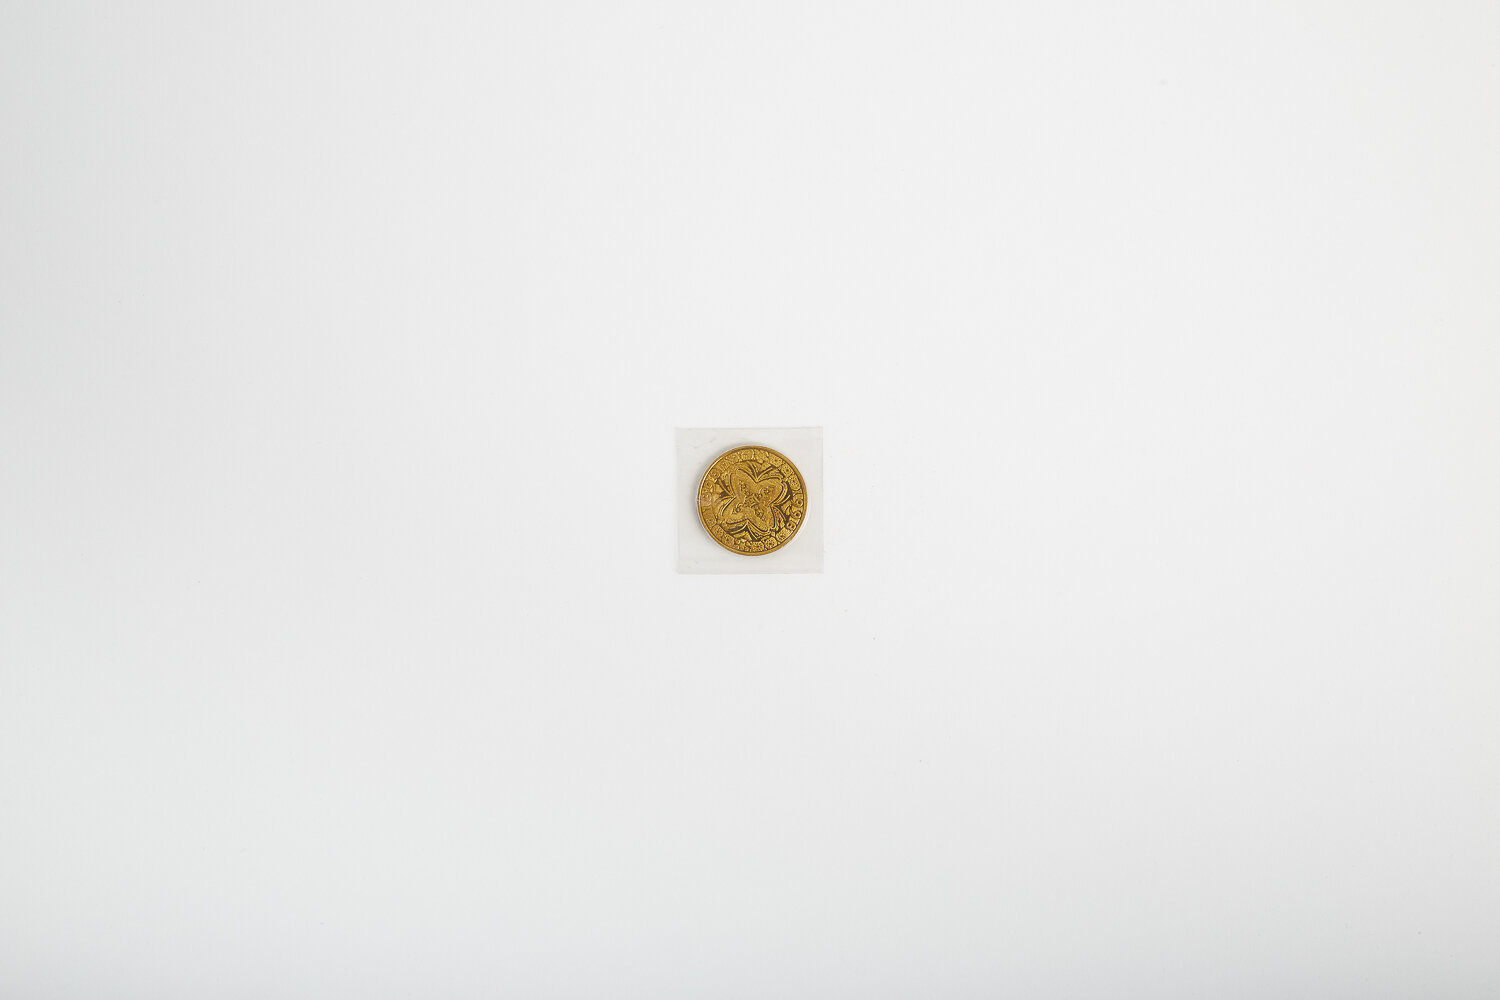 Commemorative coin.